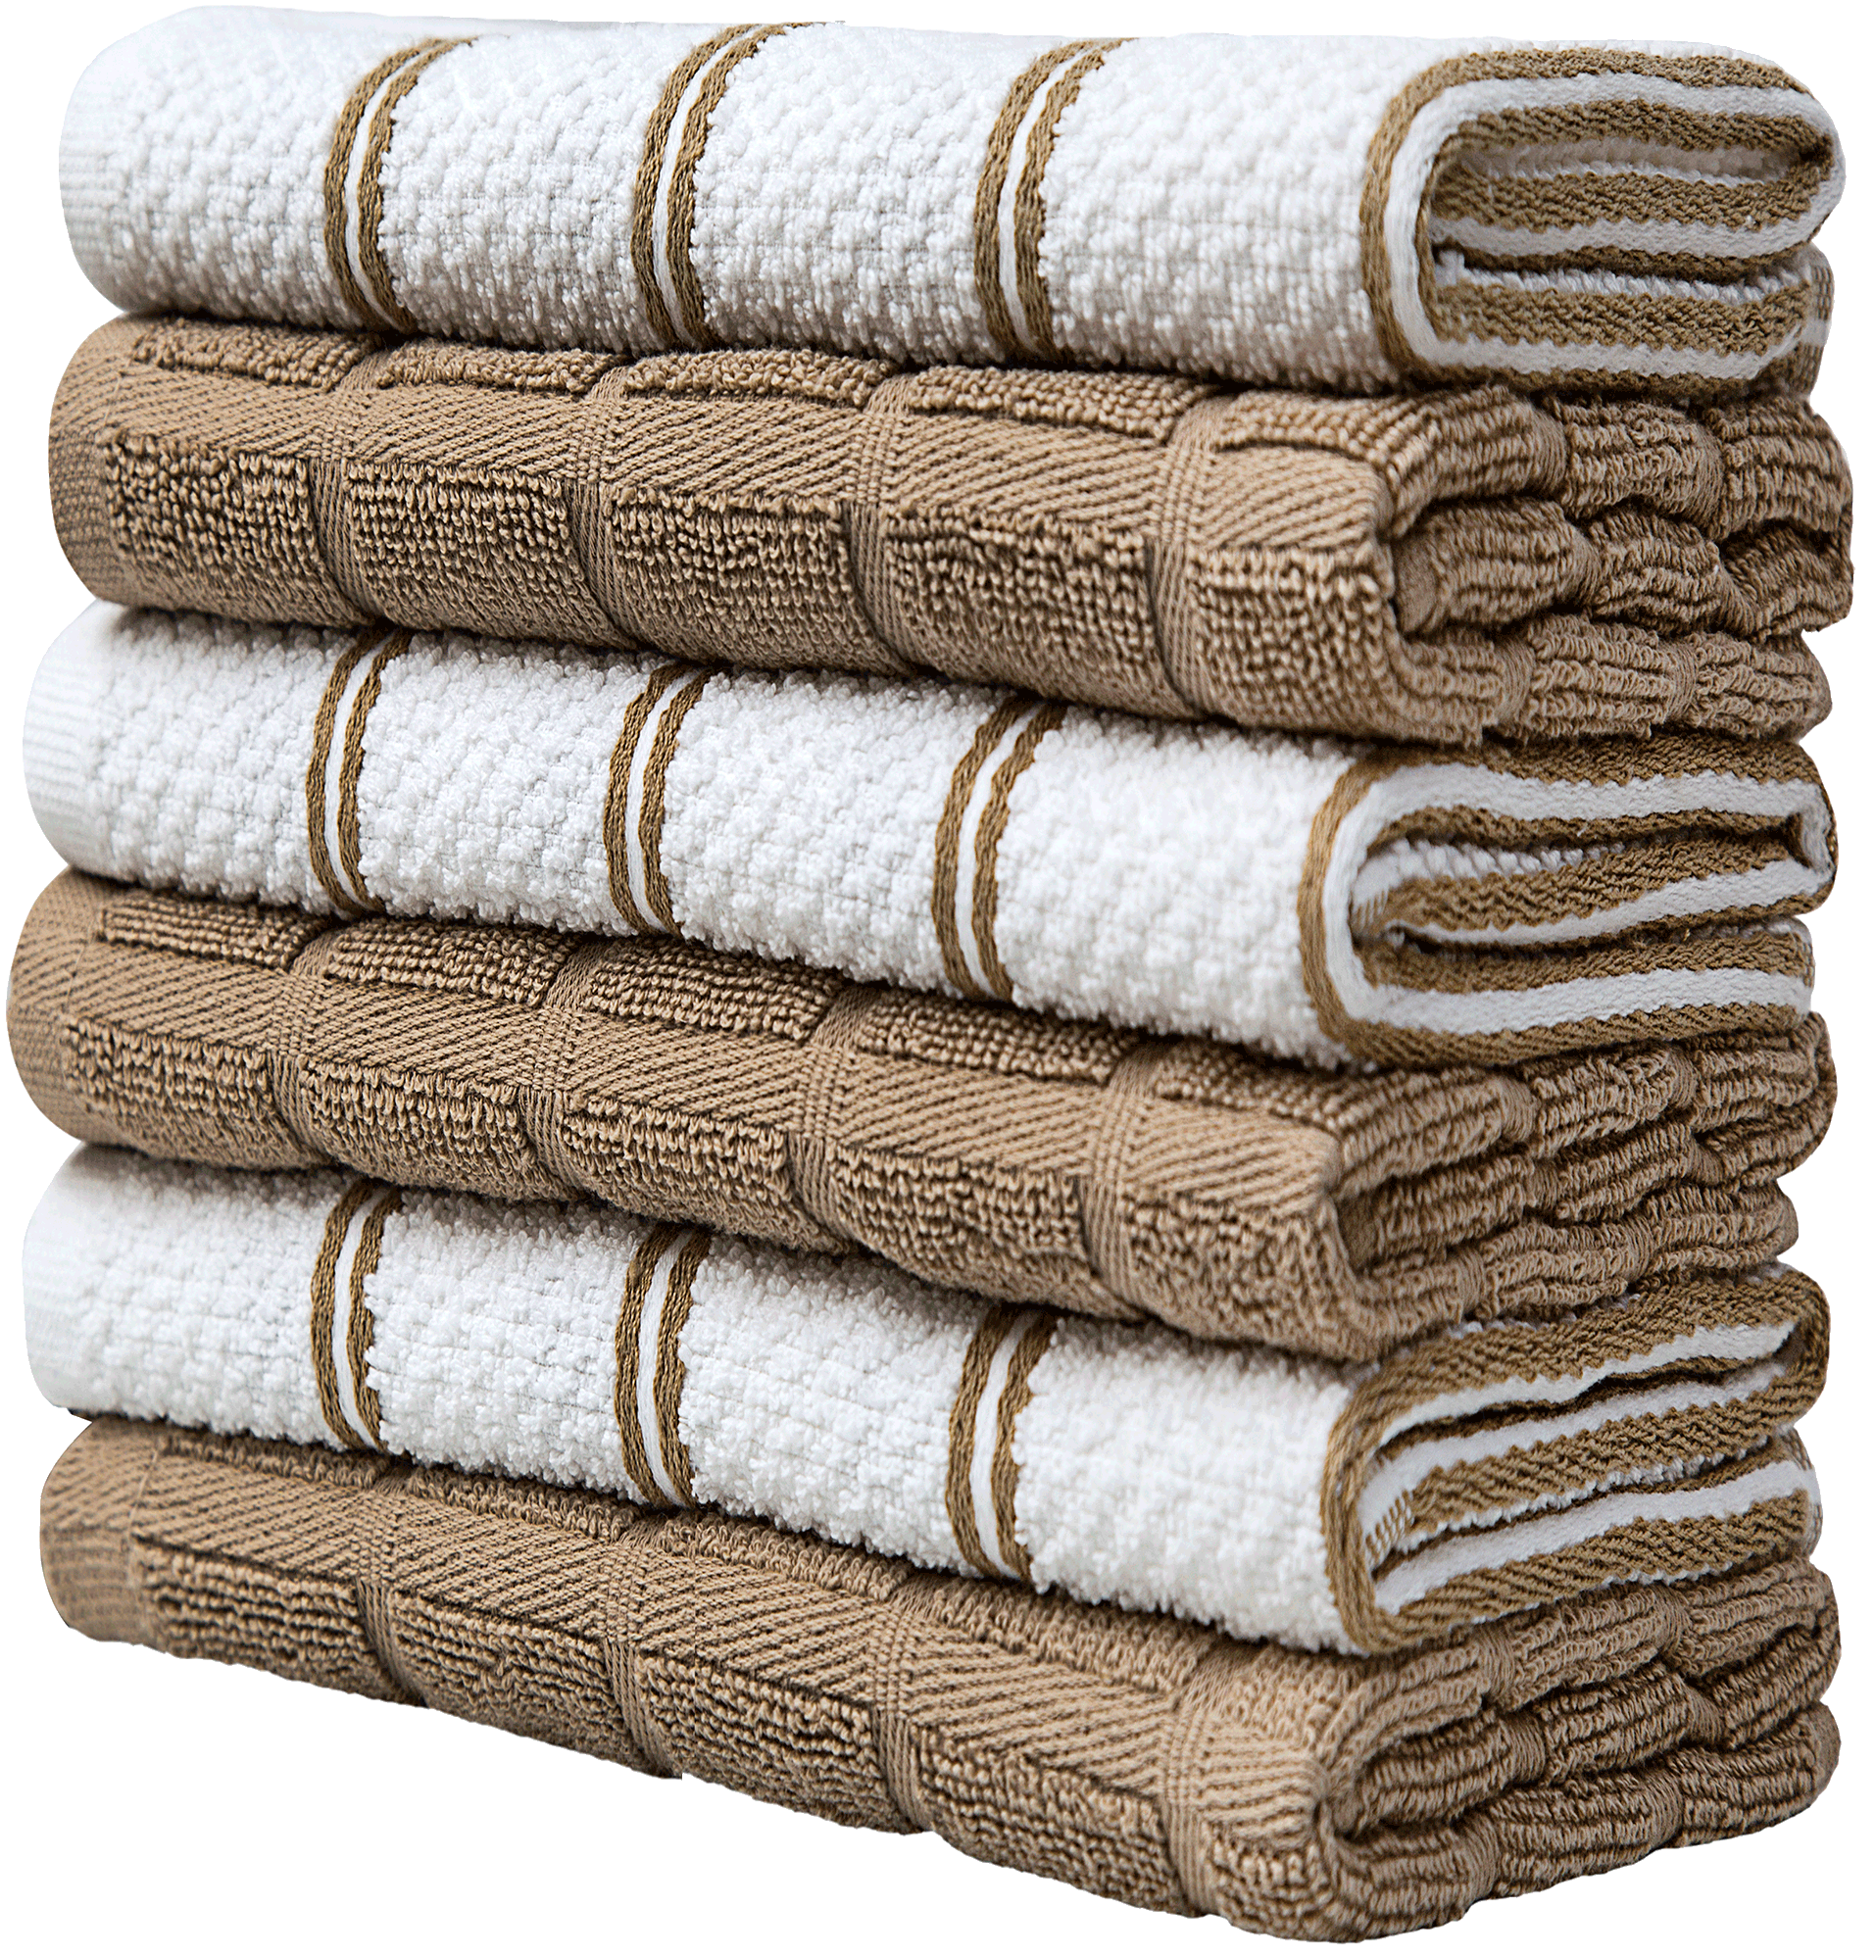 Bumble Towels Bumble Premium Cotton Kitchen Towels (16 x 28